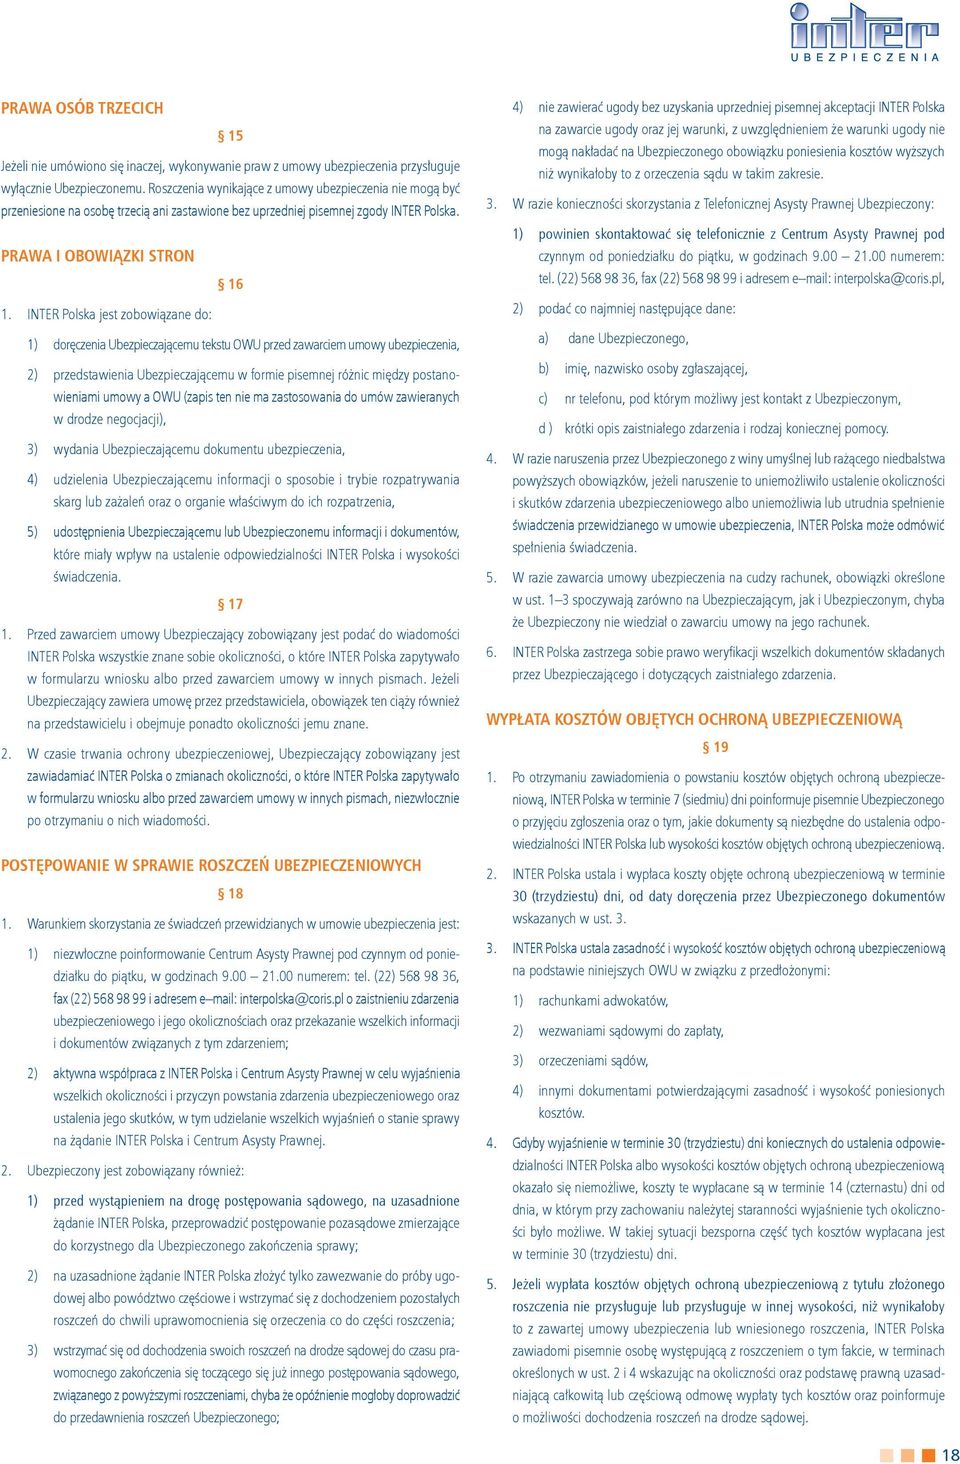 INTER Polska jest zobowiązane do: 1) doręczenia Ubezpieczającemu tekstu OWU przed zawarciem umowy ubezpieczenia, 2) przedstawienia Ubezpieczającemu w formie pisemnej różnic między postanowieniami